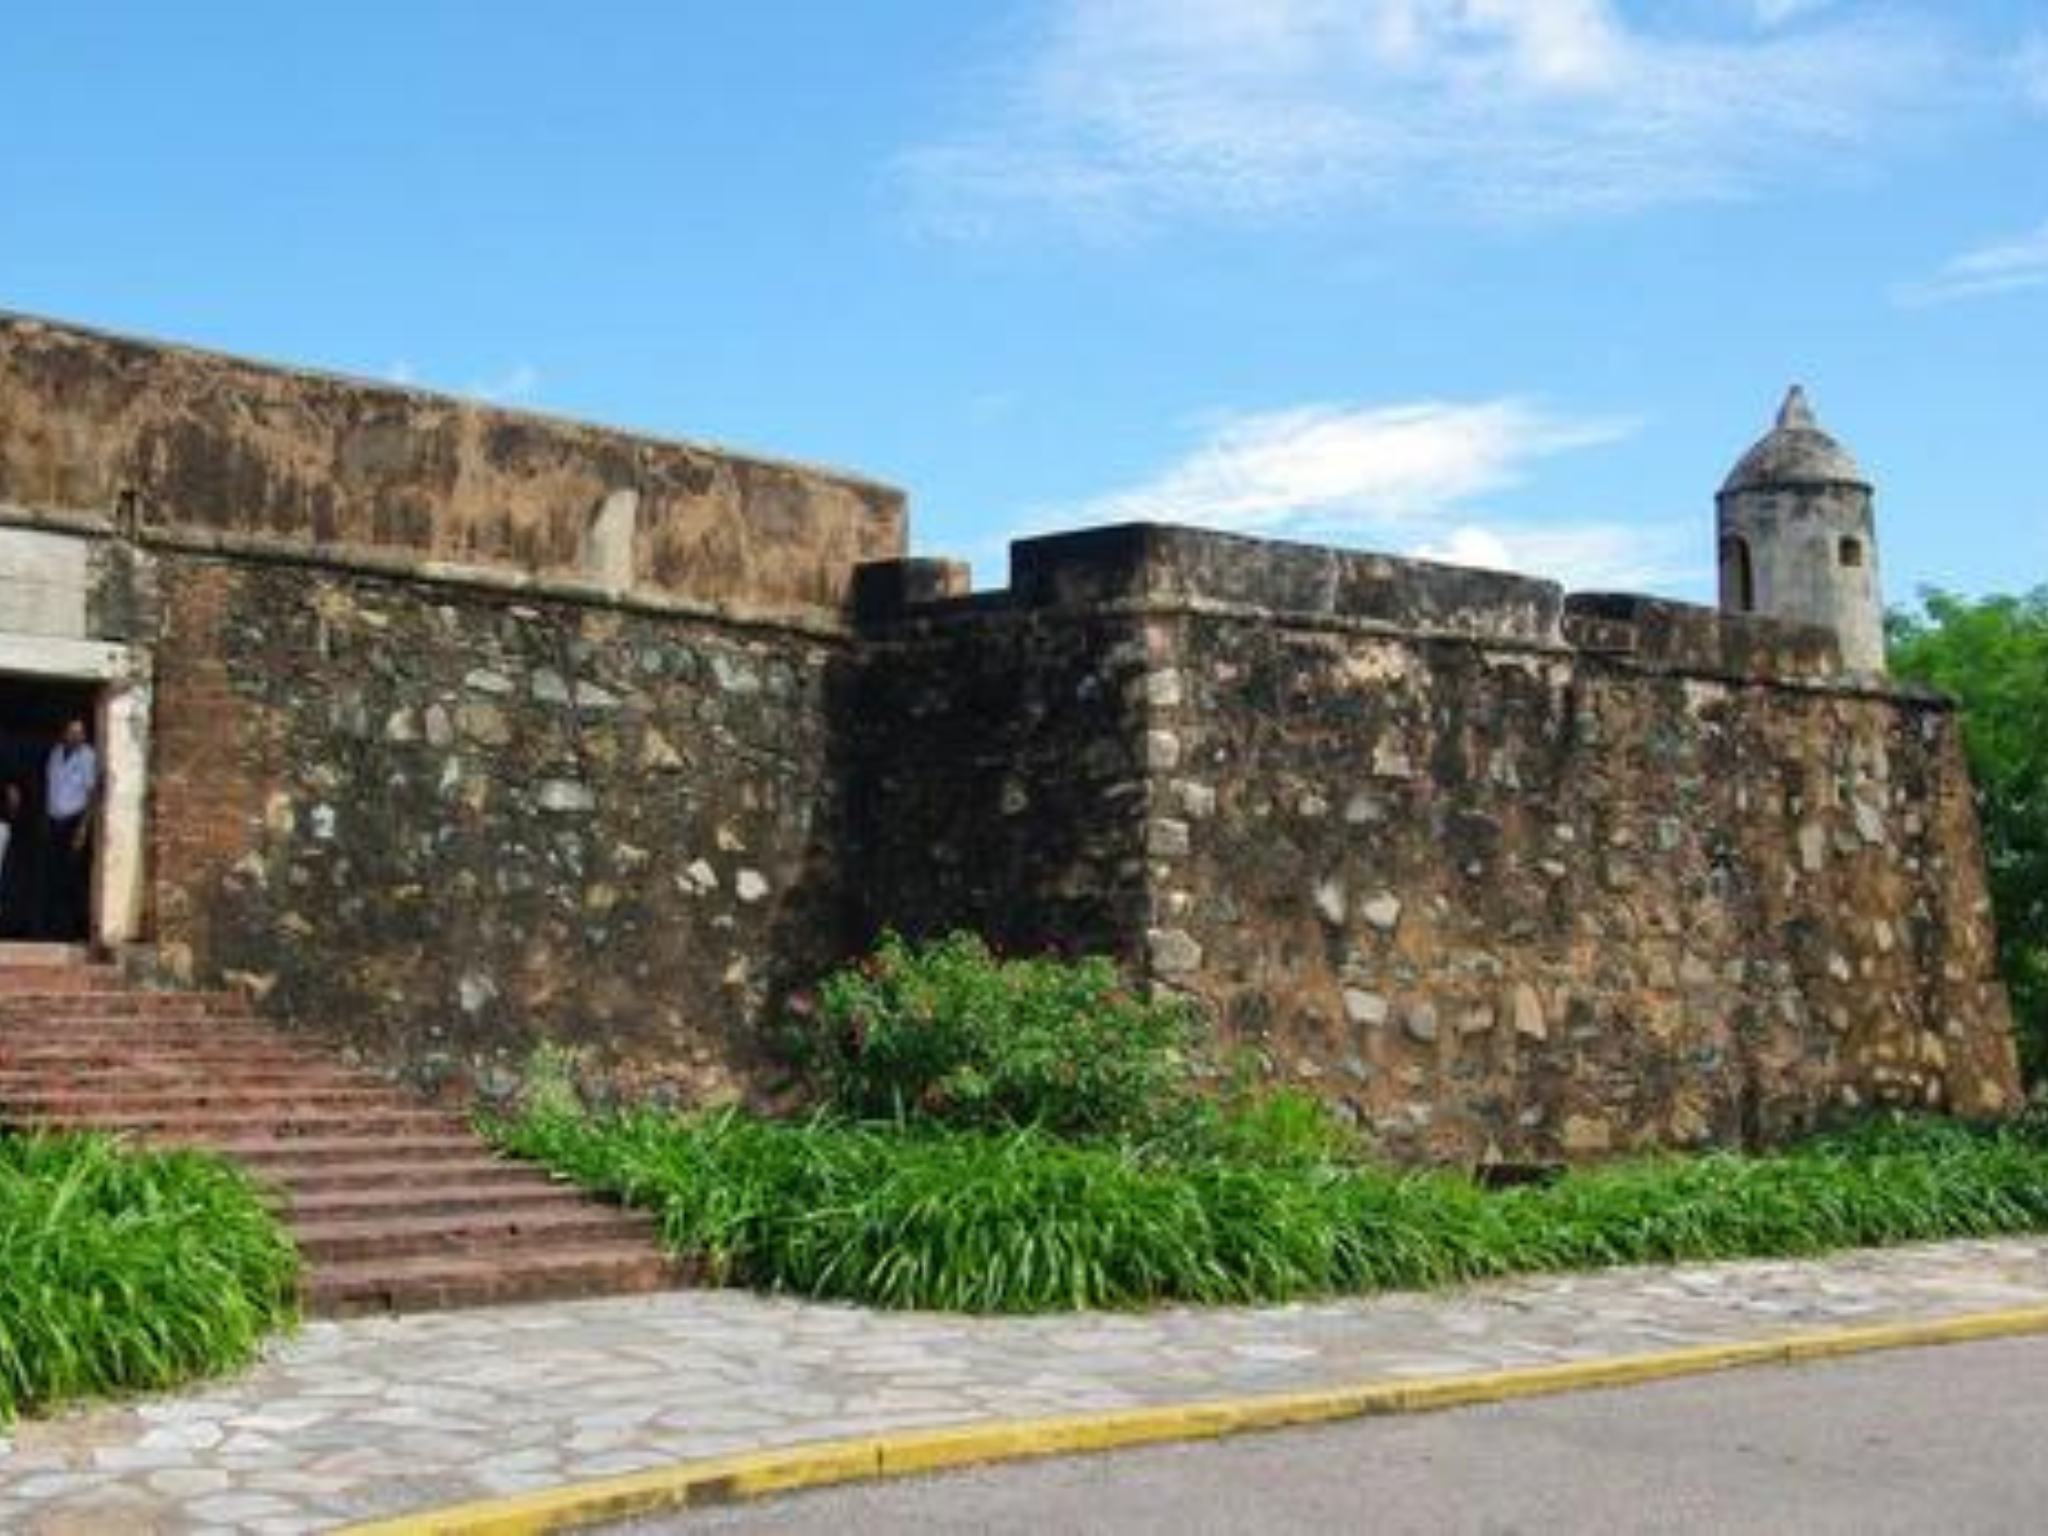 Guía turística TARBAY – Descubre el Castillo Santa Rosa